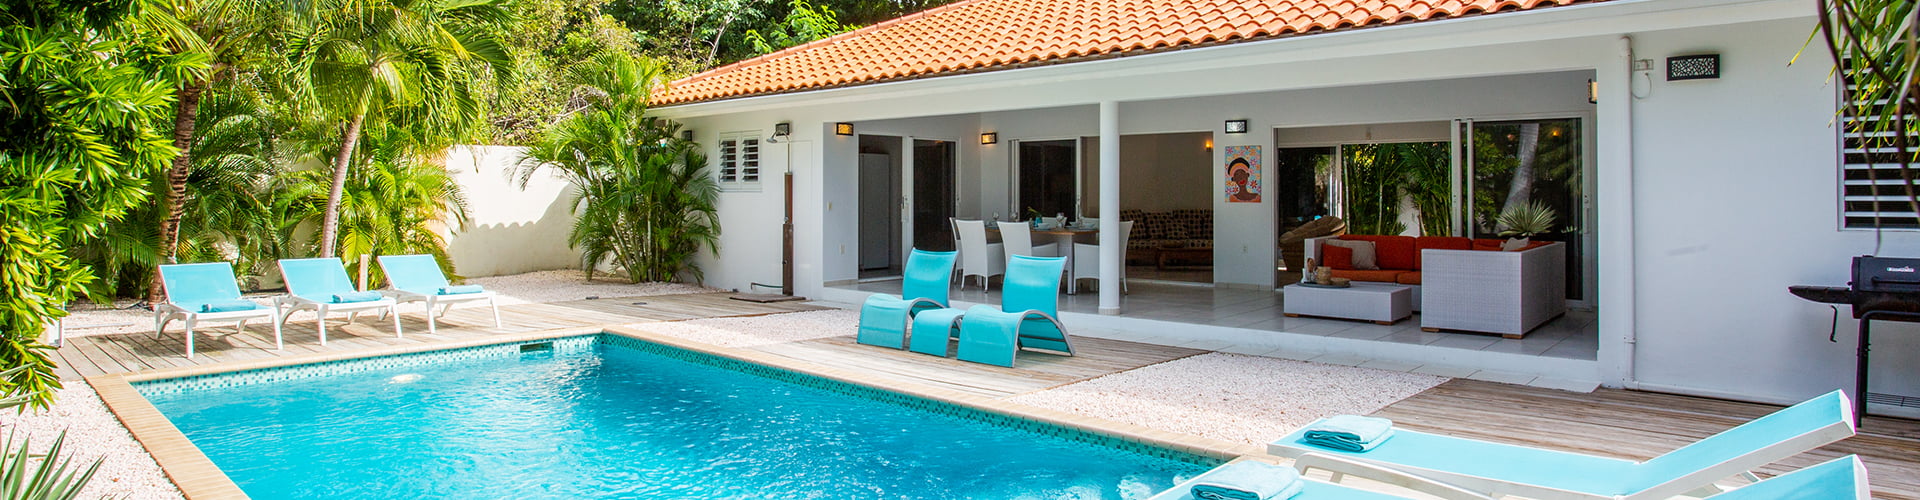 Mieten Sie ein Ferienhaus auf Curacao mit privatem Pool